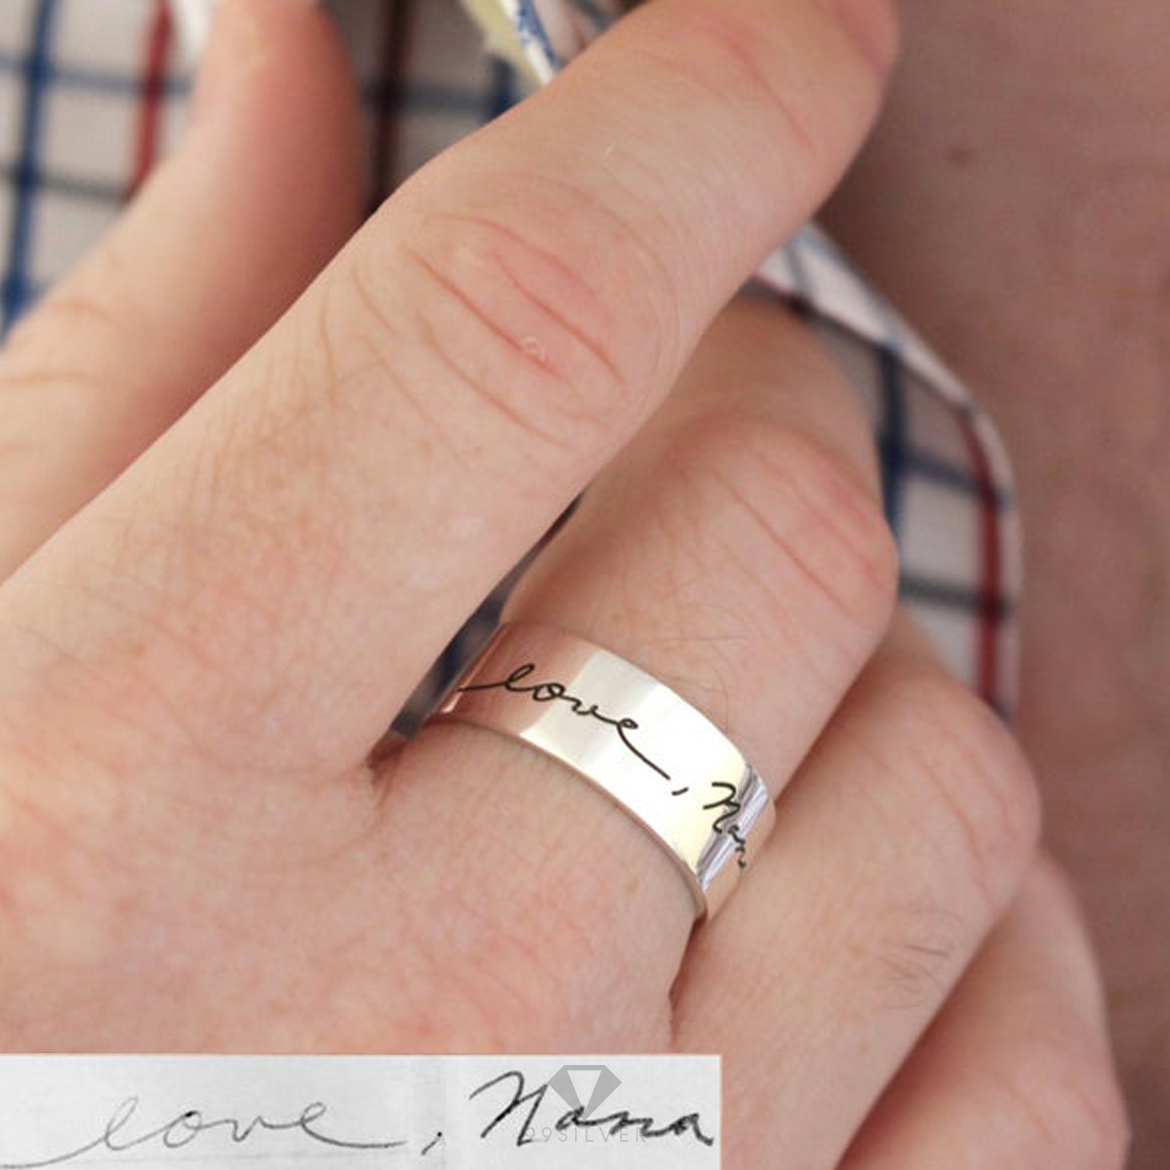 แหวนสลักลายมือ ใช้ลายมือจากที่คุณเขียน มาสลักลงแหวน แทนความรู้สึก